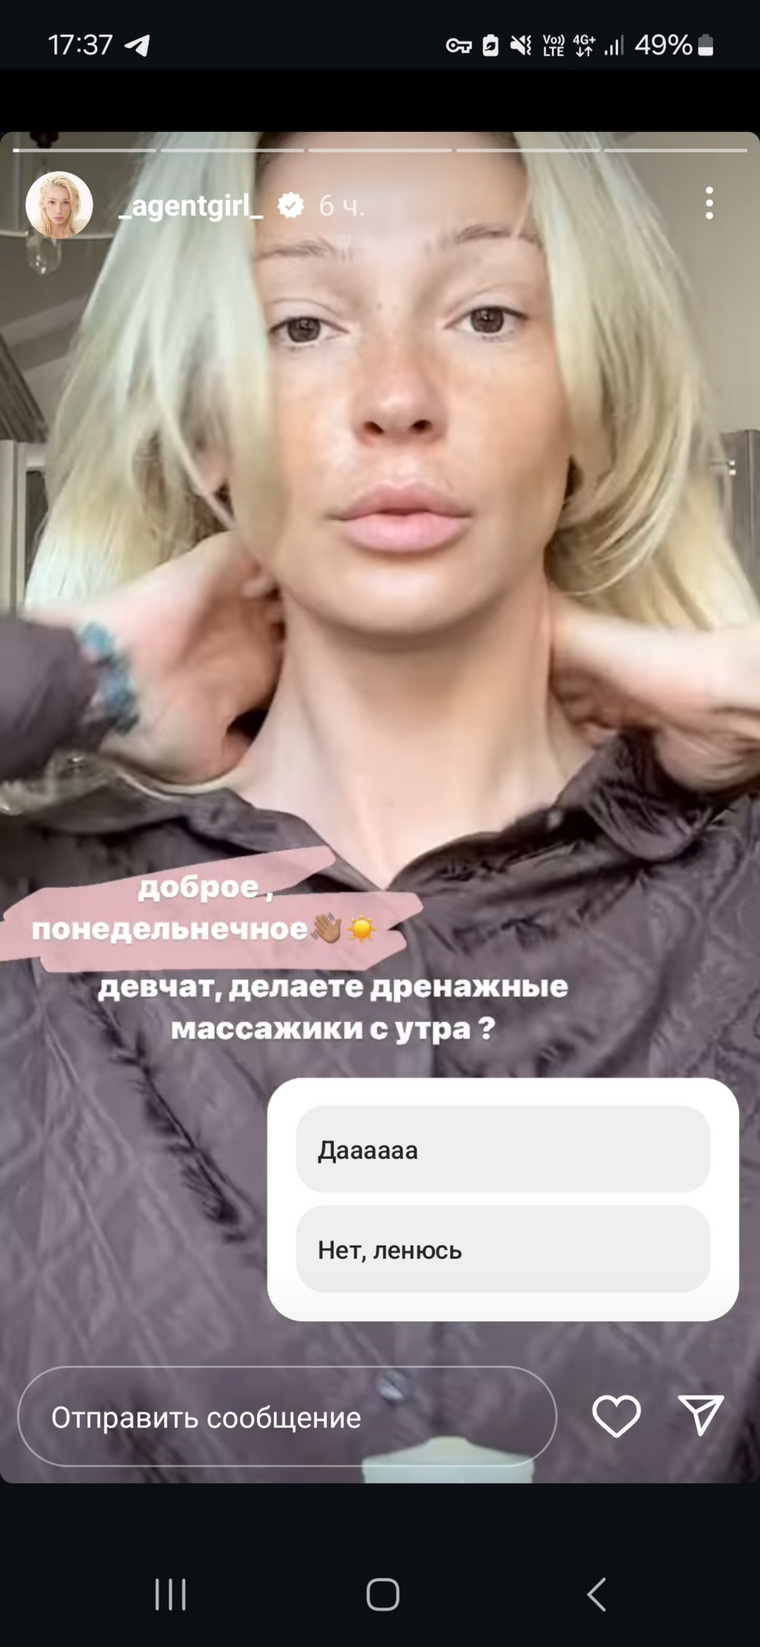 Ивлеева поделилась первыми видео в Instagram (владелец компания Meta признана в России экстремистской и запрещена) 